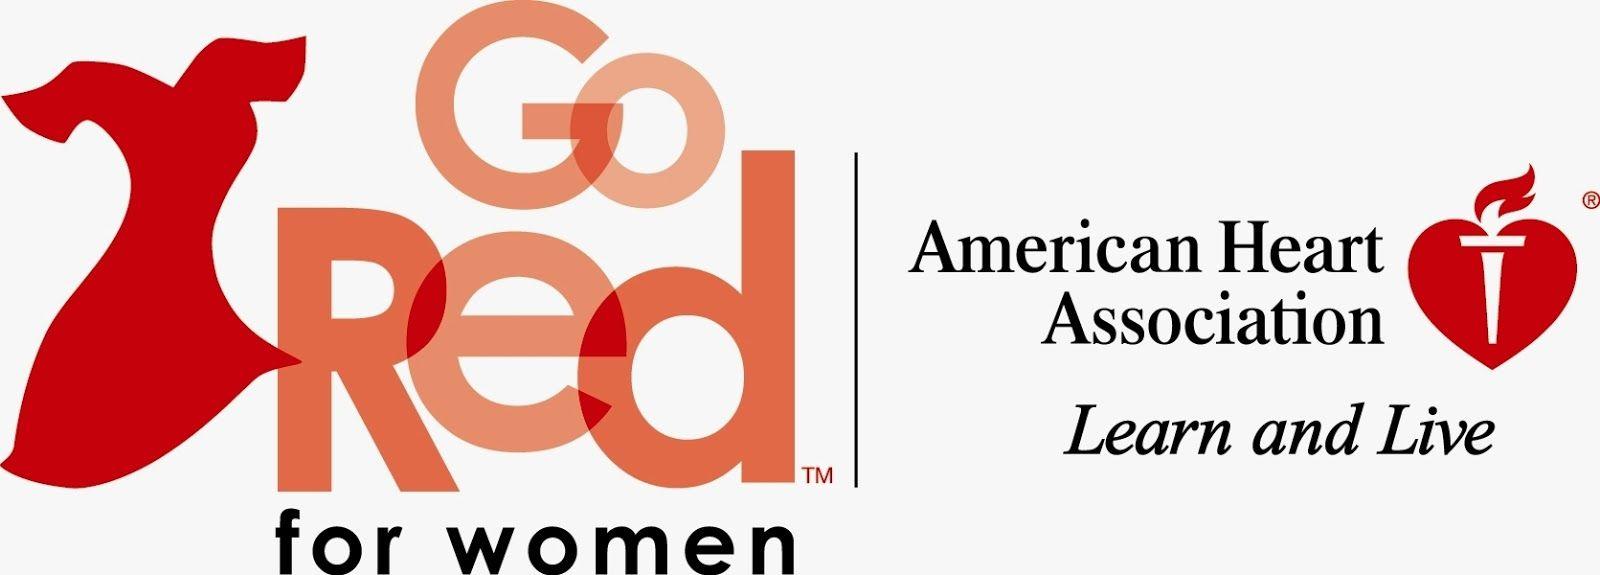 Go Red for Women Logo - International Platform: Go Red for Women